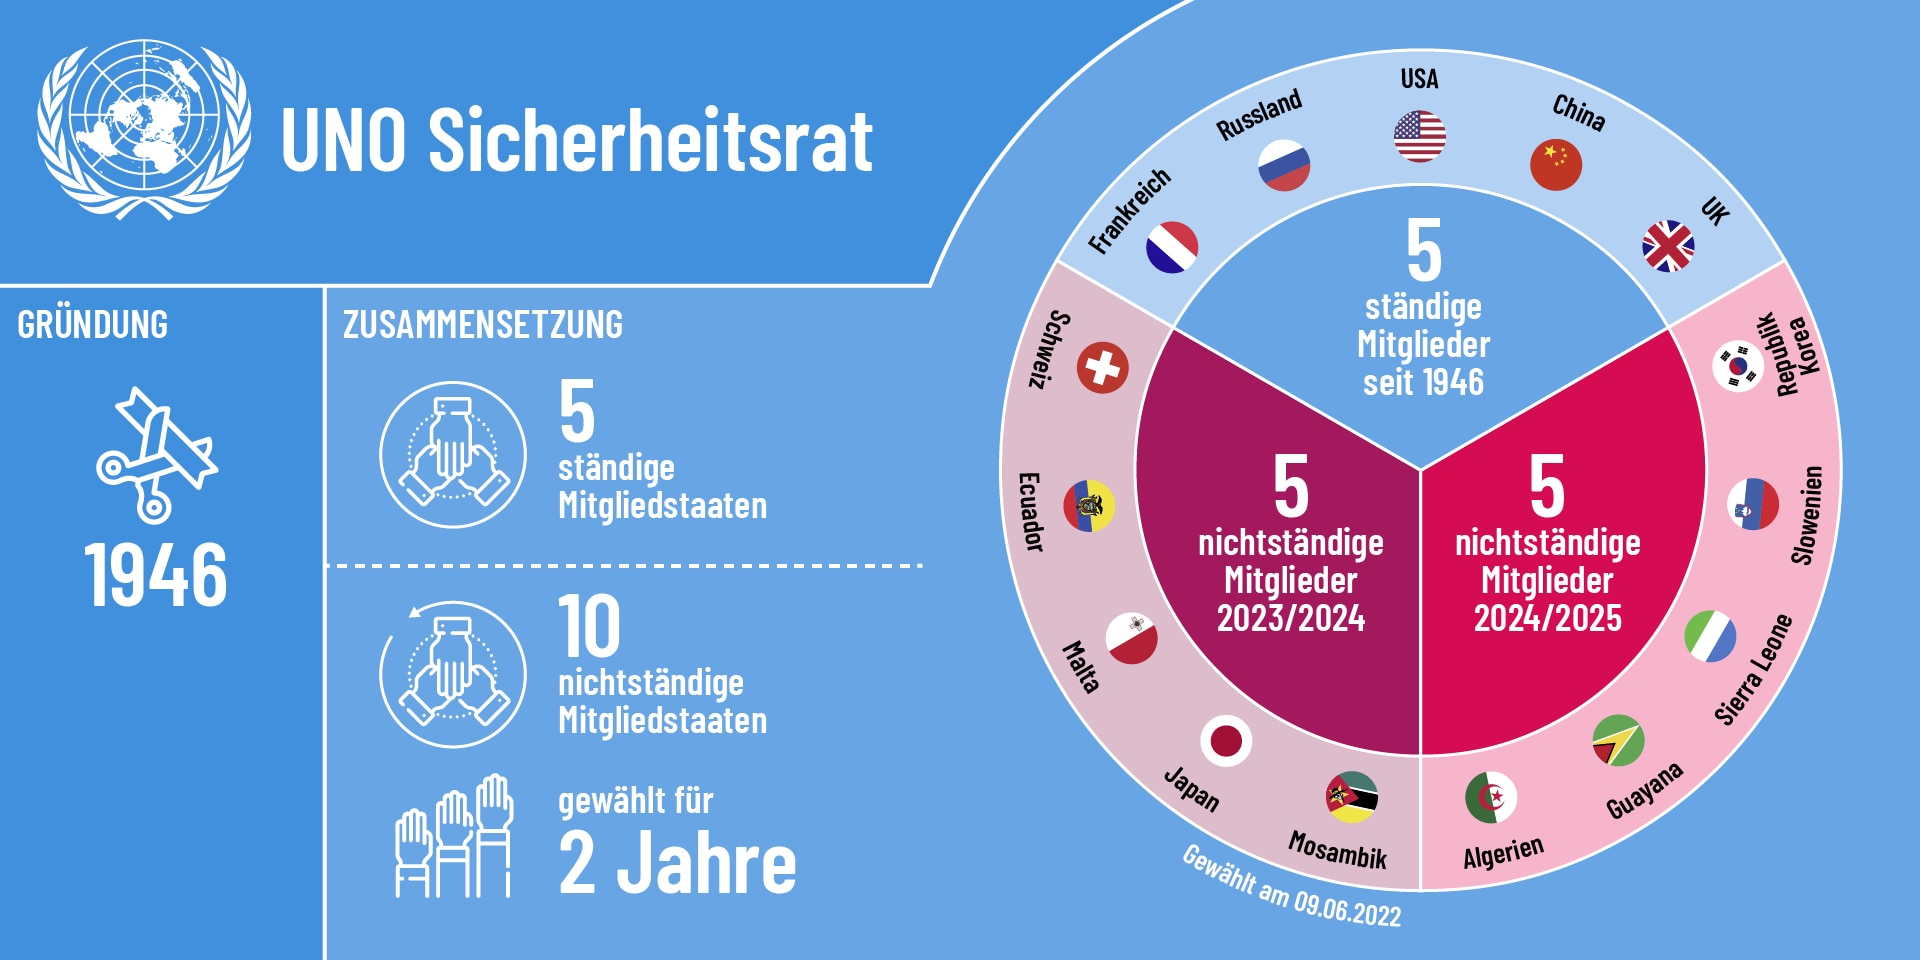 Infografik zeigt die Zusammensetzung des UNO-Sicherheitsrats für das Jahr 2023 auf. Fünf ständige Mitglieder: Frankreich, USA, Russland, Vereinigtes Königreich und China. Sowie zehn nichtständige Mitglieder: Albanien, Brasilien, Vereinigte Arabische Emirate, Ghana, Gabun, Schweiz, Ecuador, Malta, Japan und Mosambik.